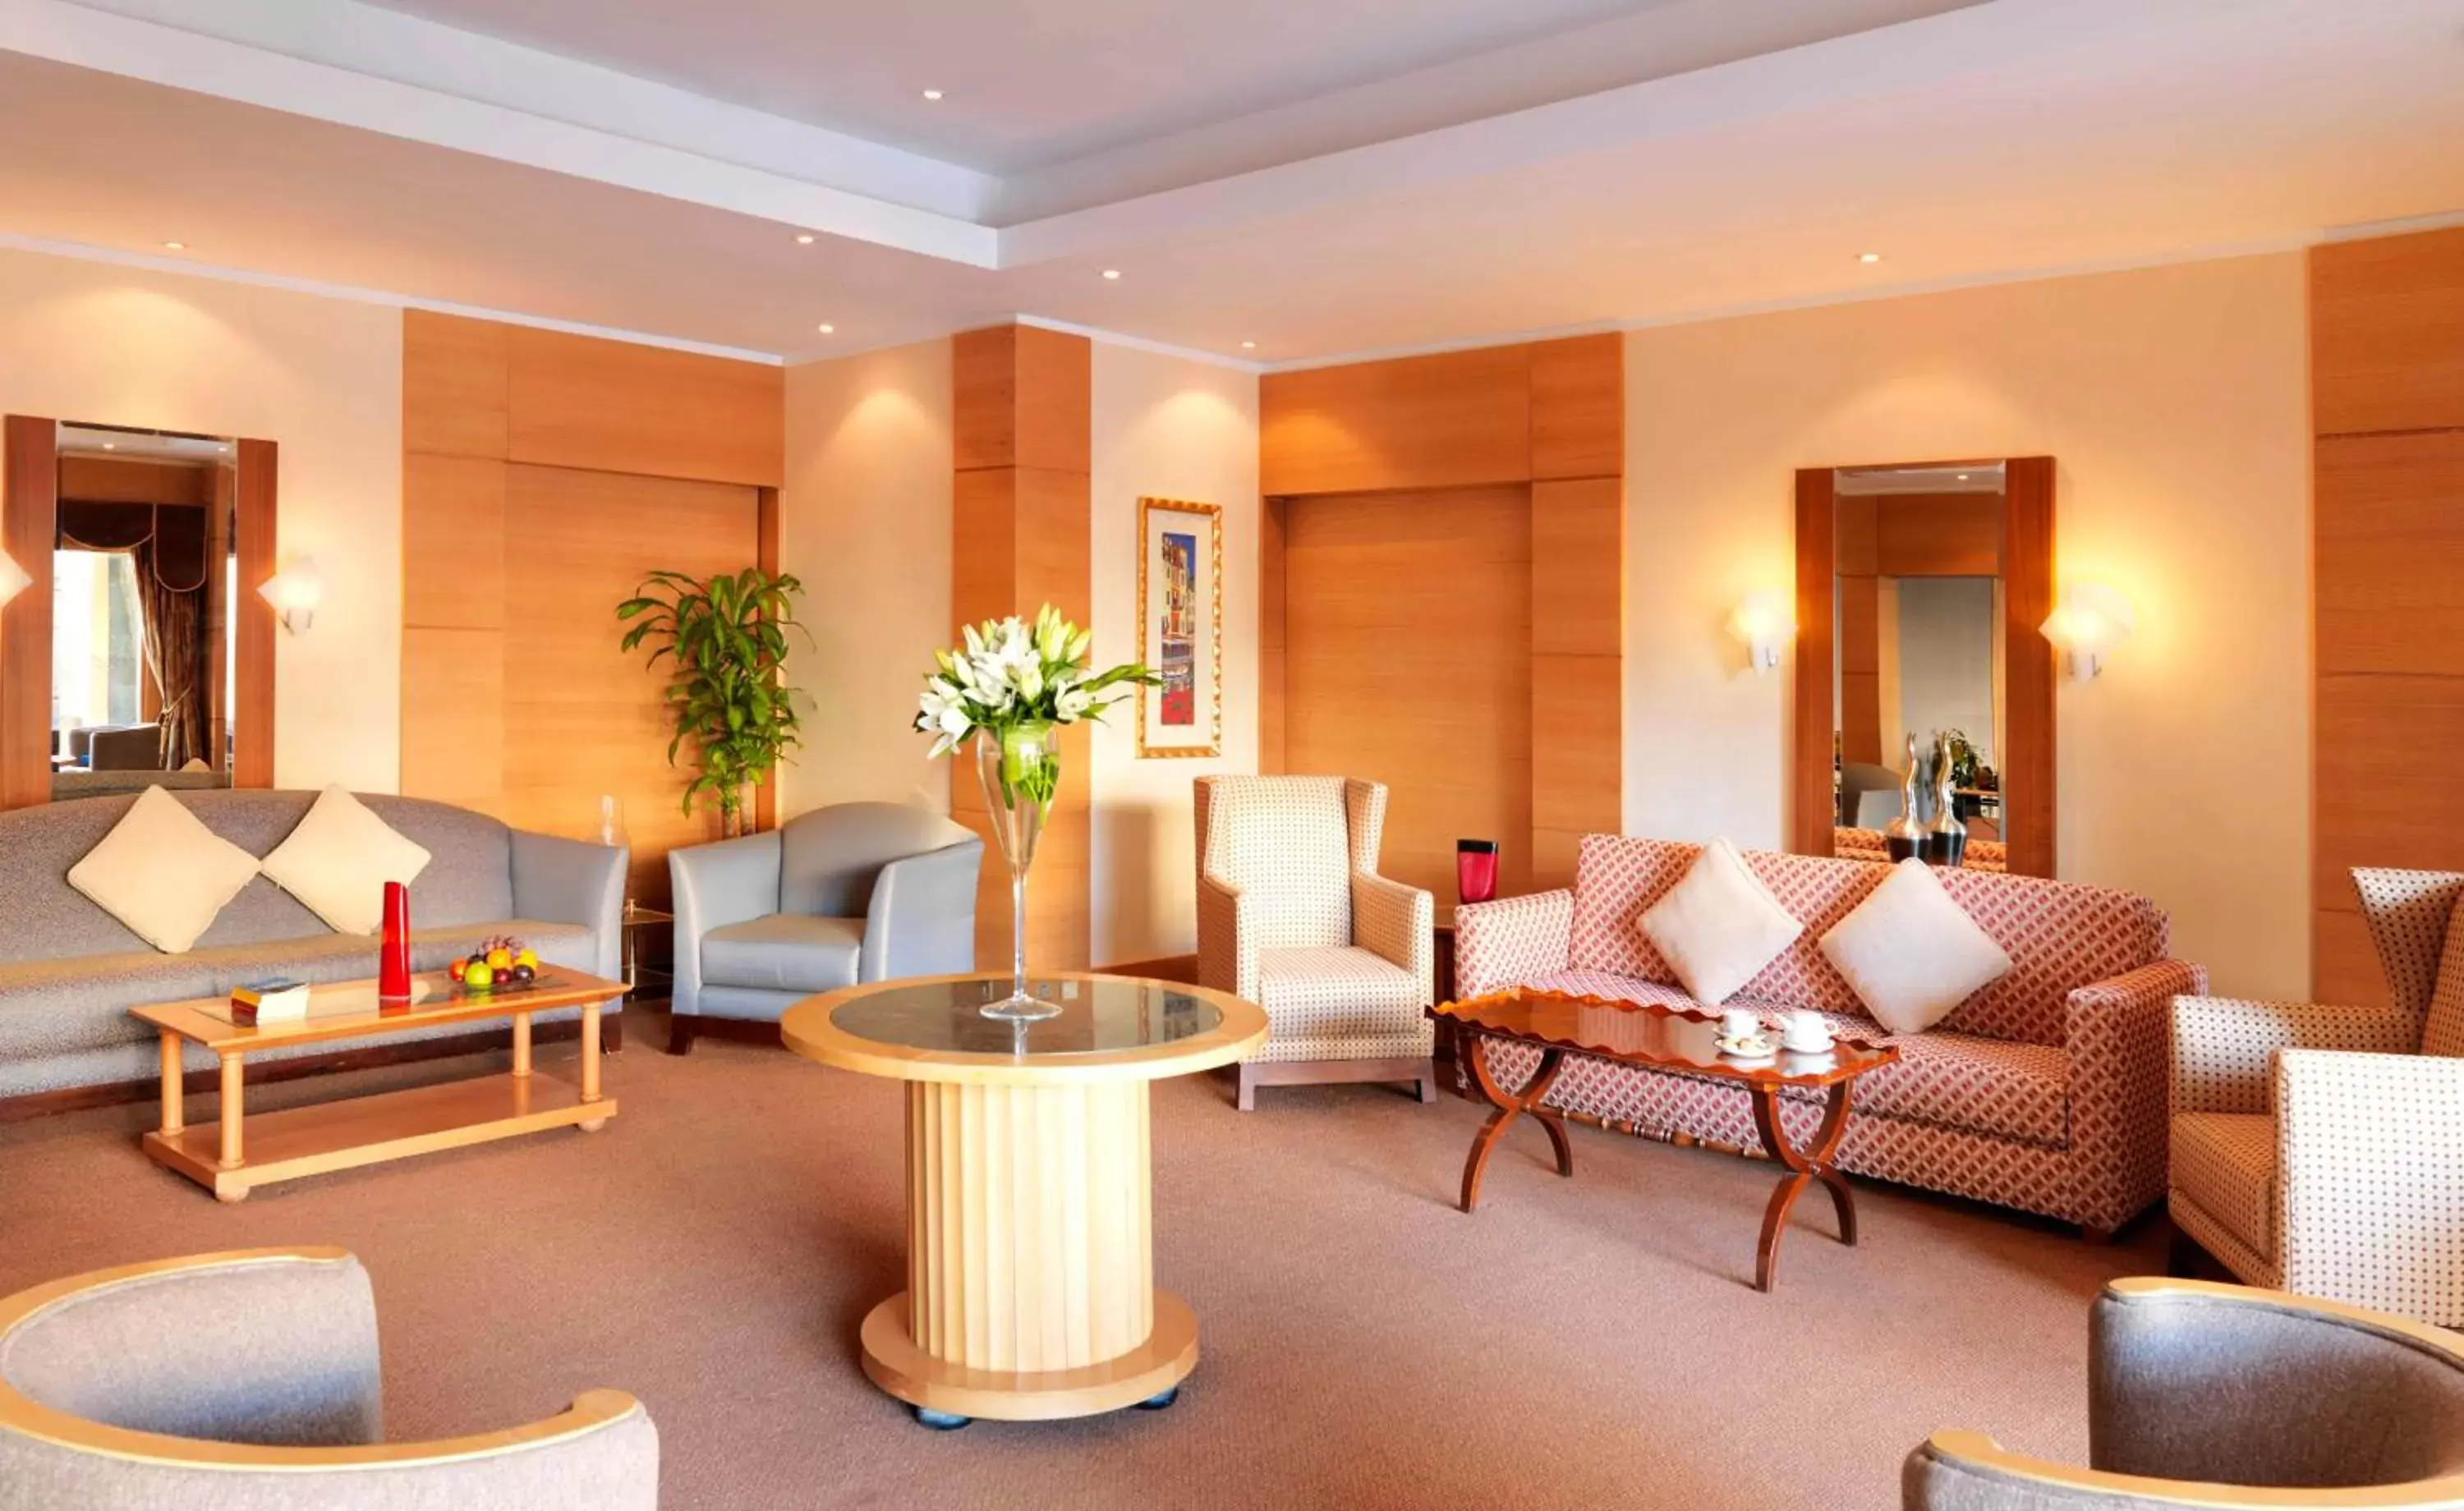 Lounge or bar, Lobby/Reception in Radisson Blu Hotel, Riyadh